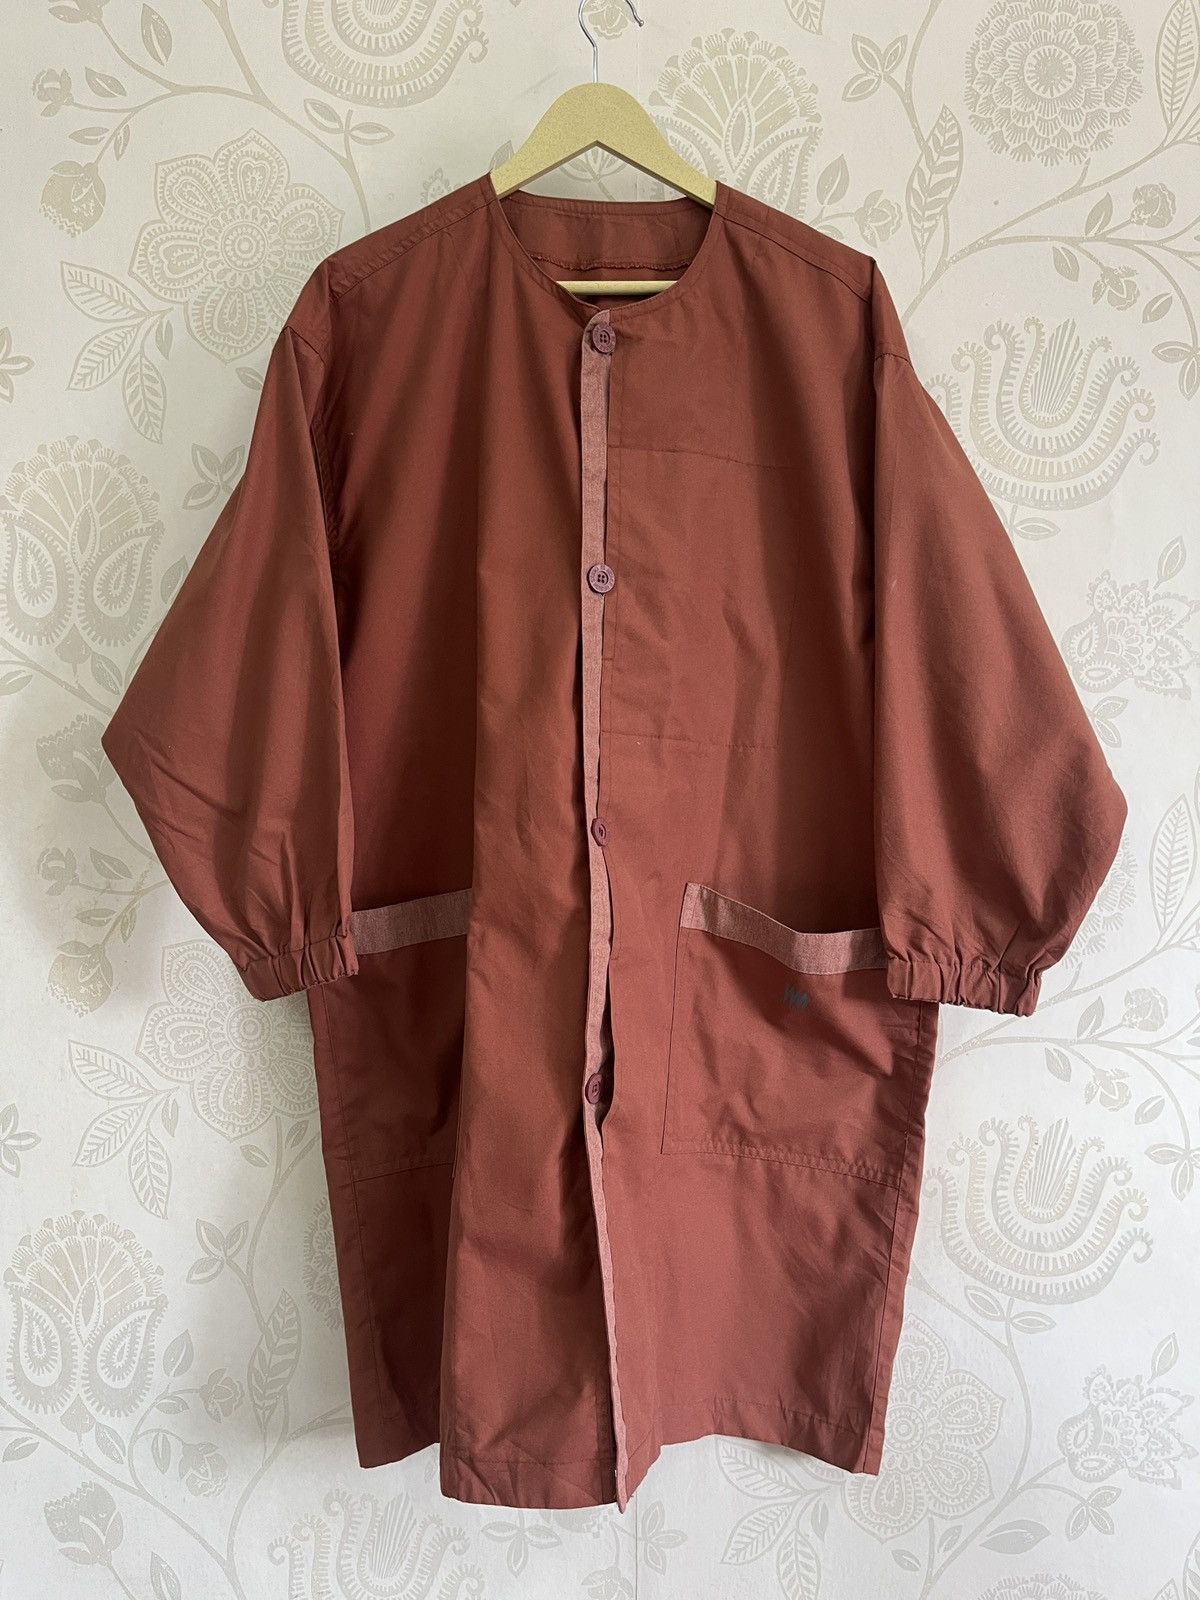 Vintage IM Issey Miyake Cloaks - 1